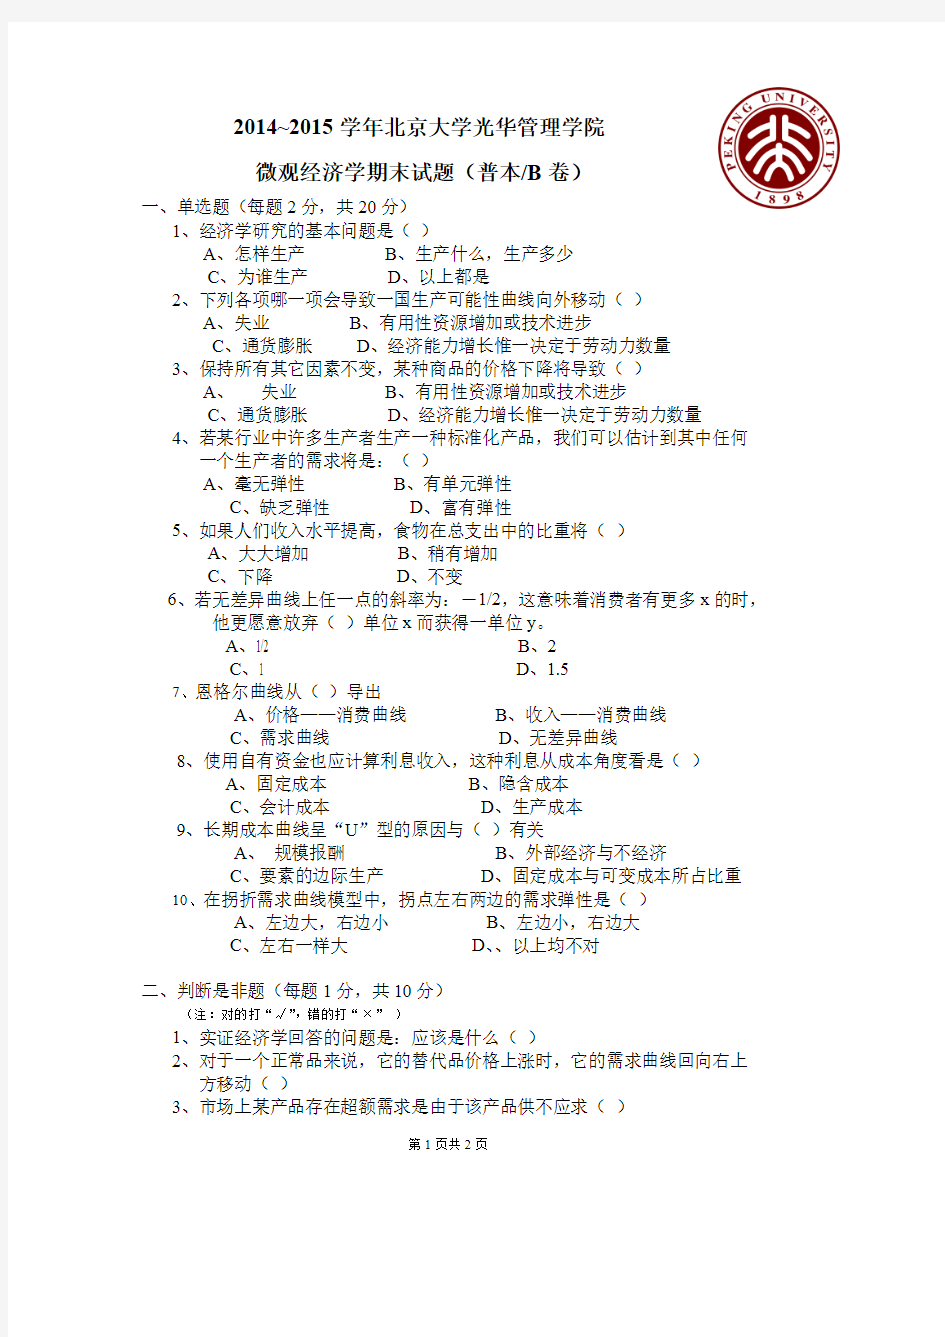 (完整)北京大学微观经济学期末试题及答案,推荐文档